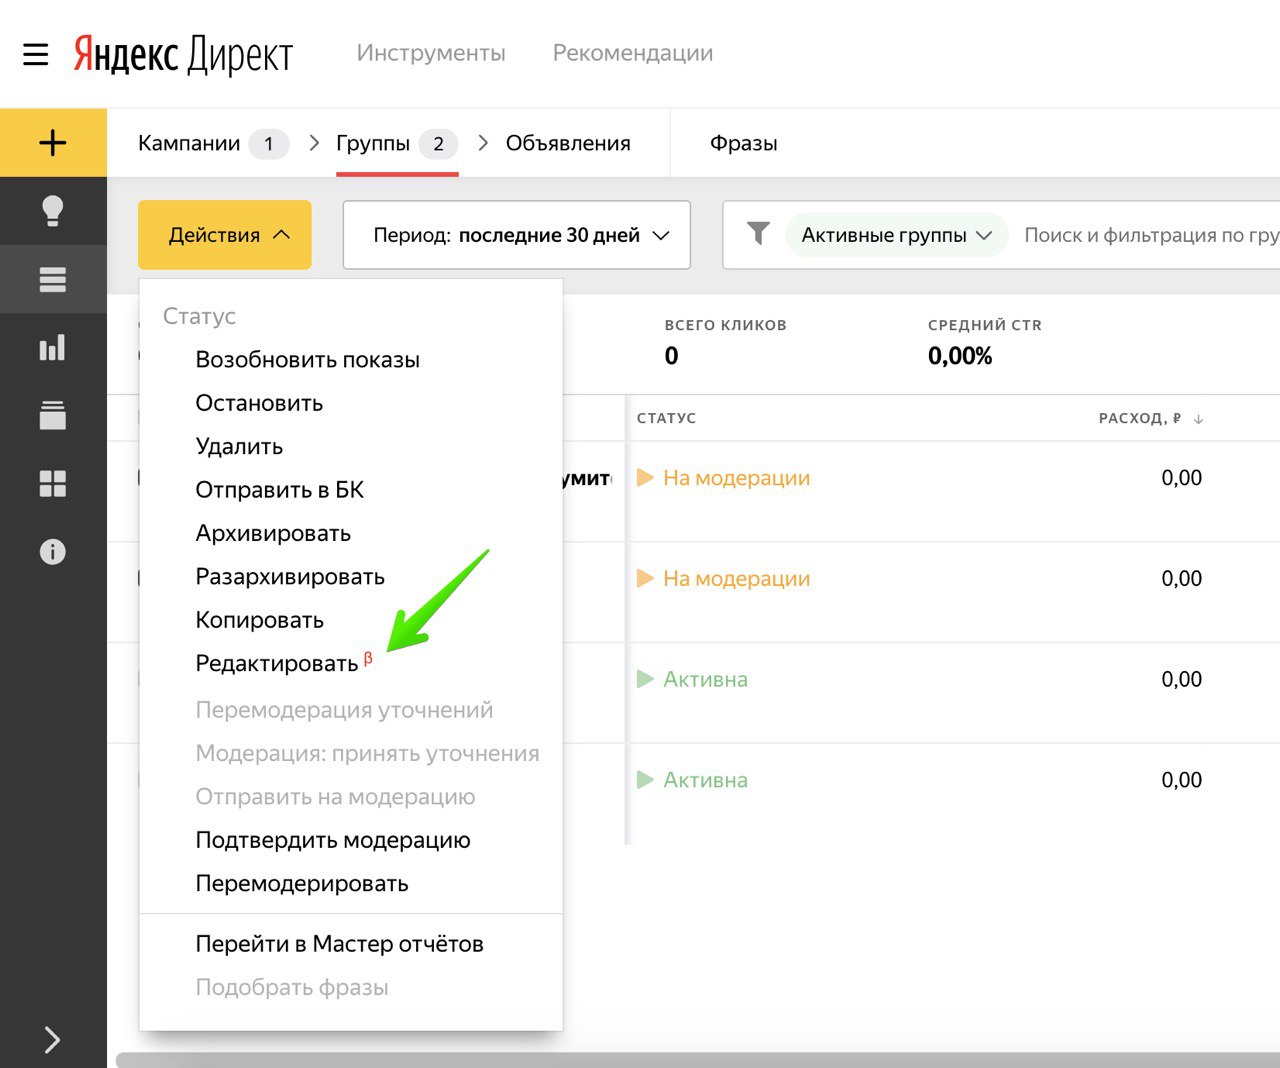 Яндекс директ Интерфейс